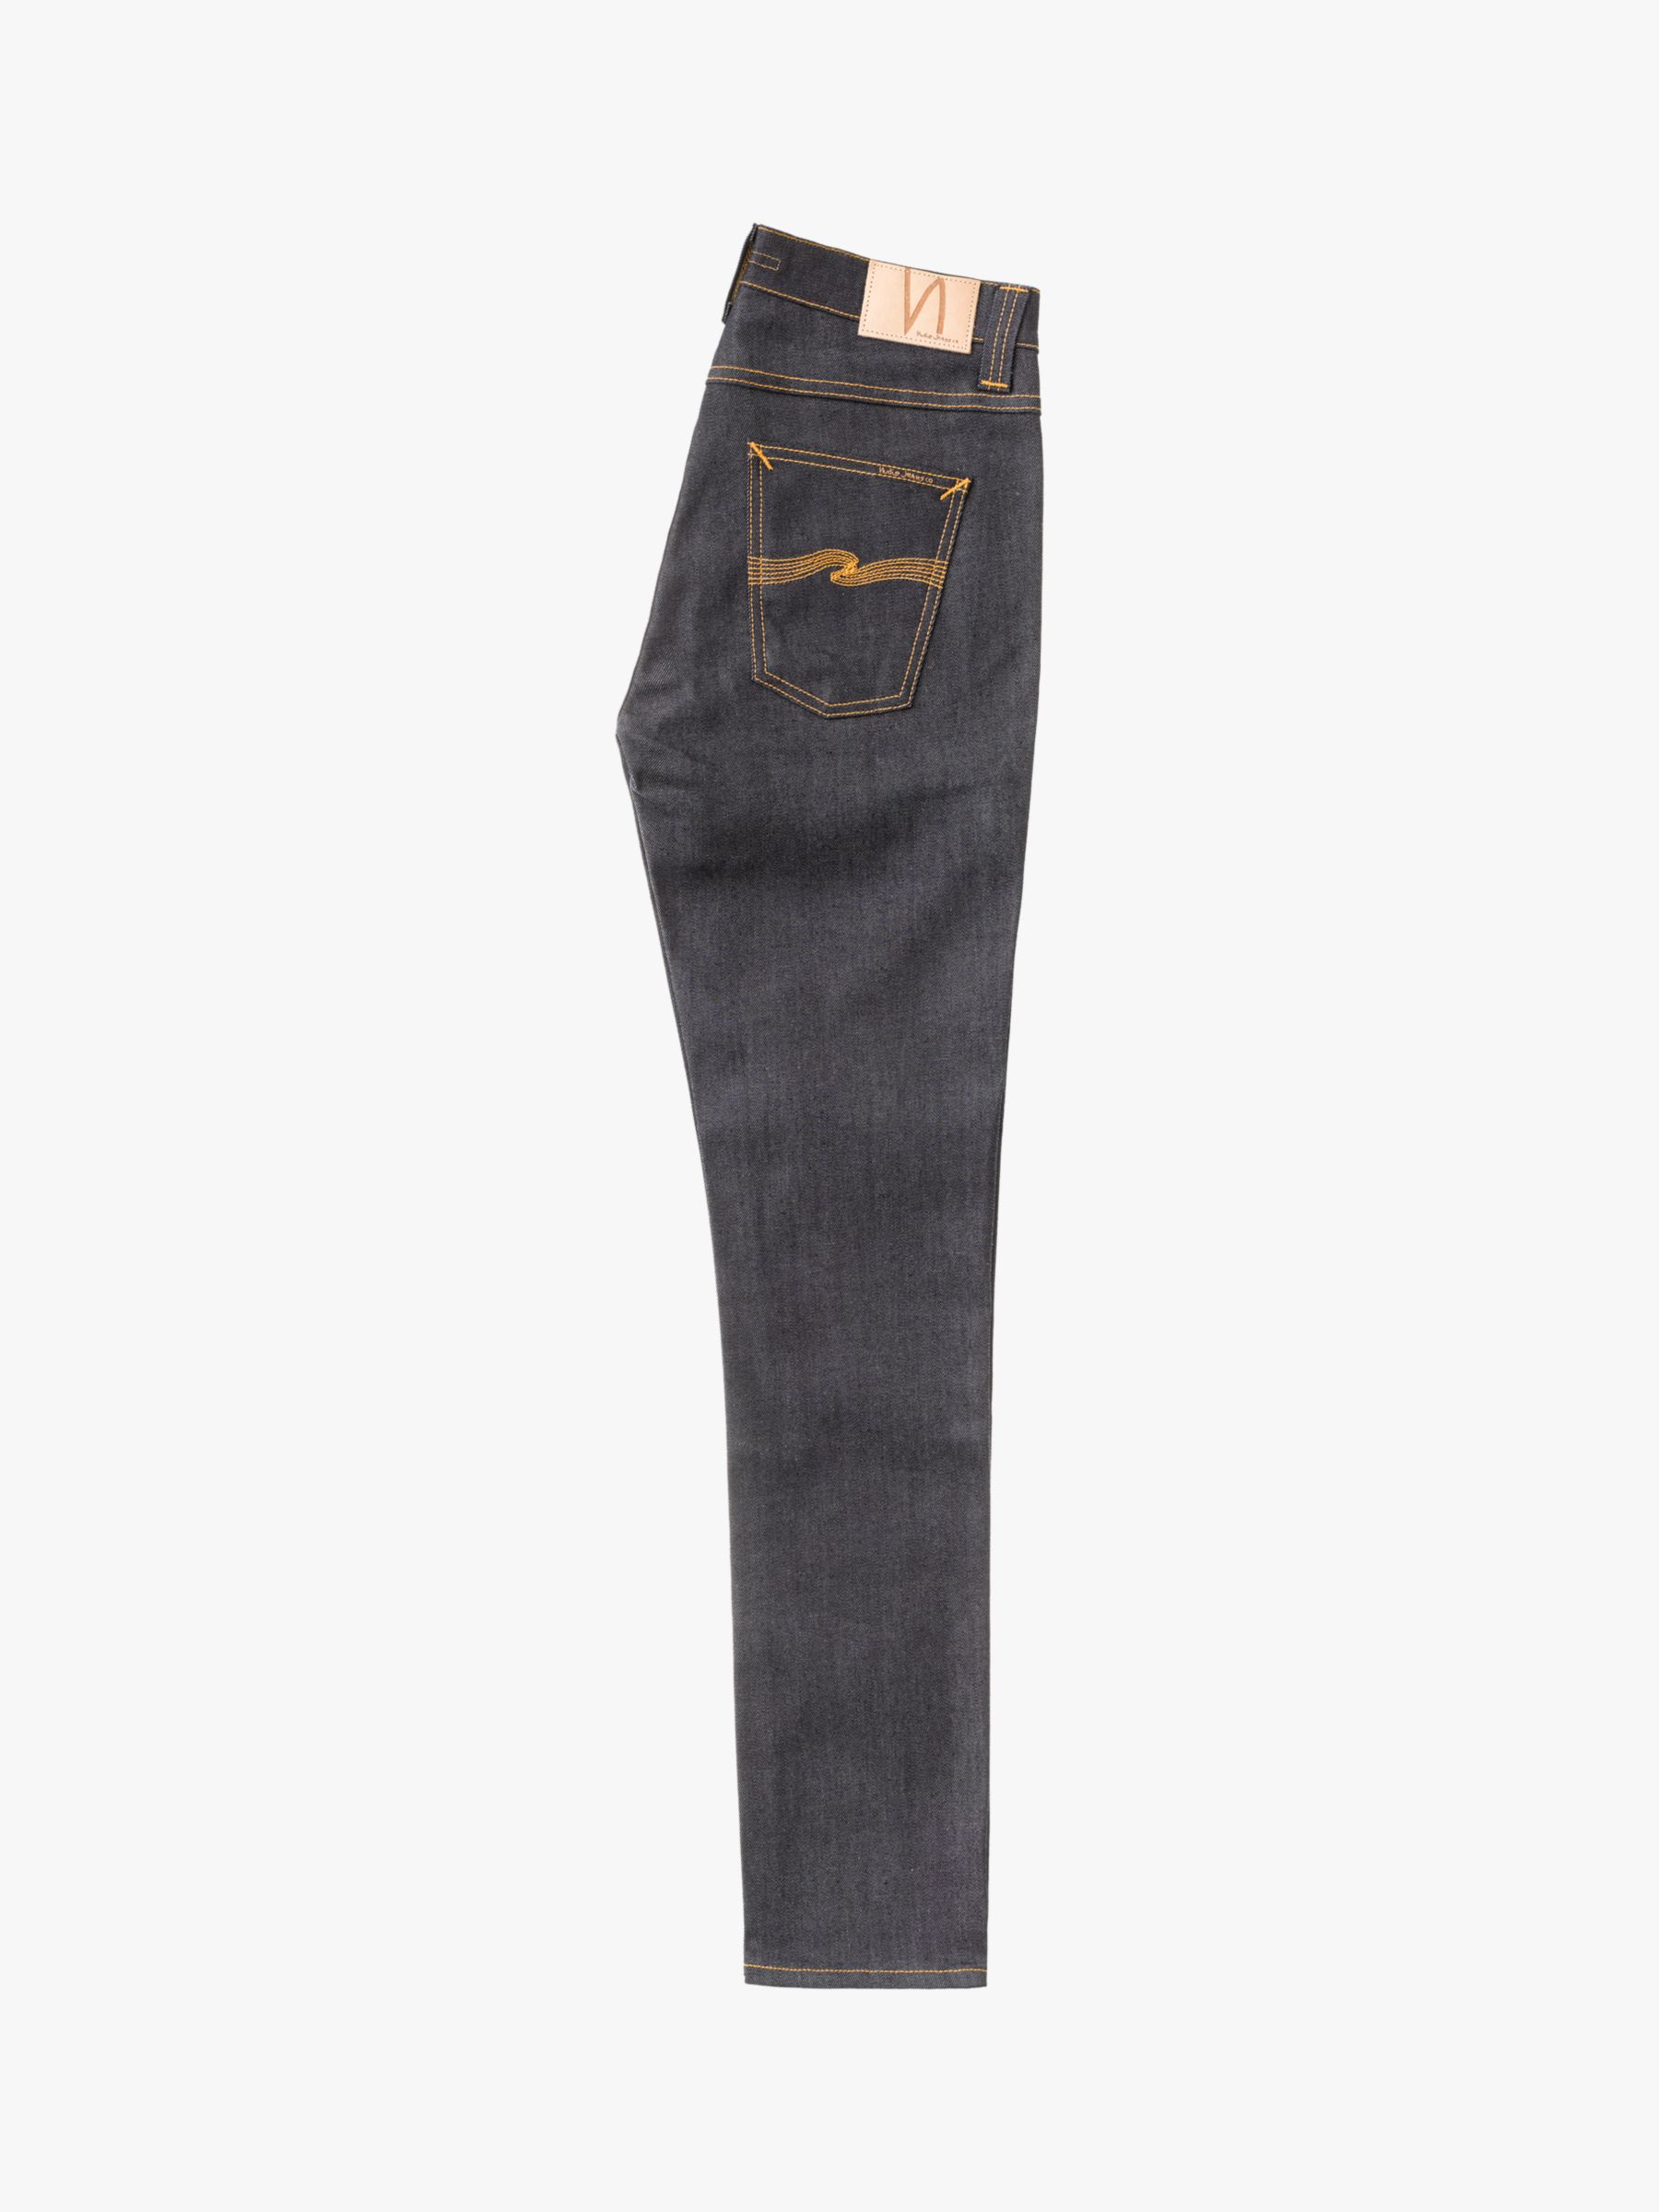 nudie jeans lean dean dry 16 dips review